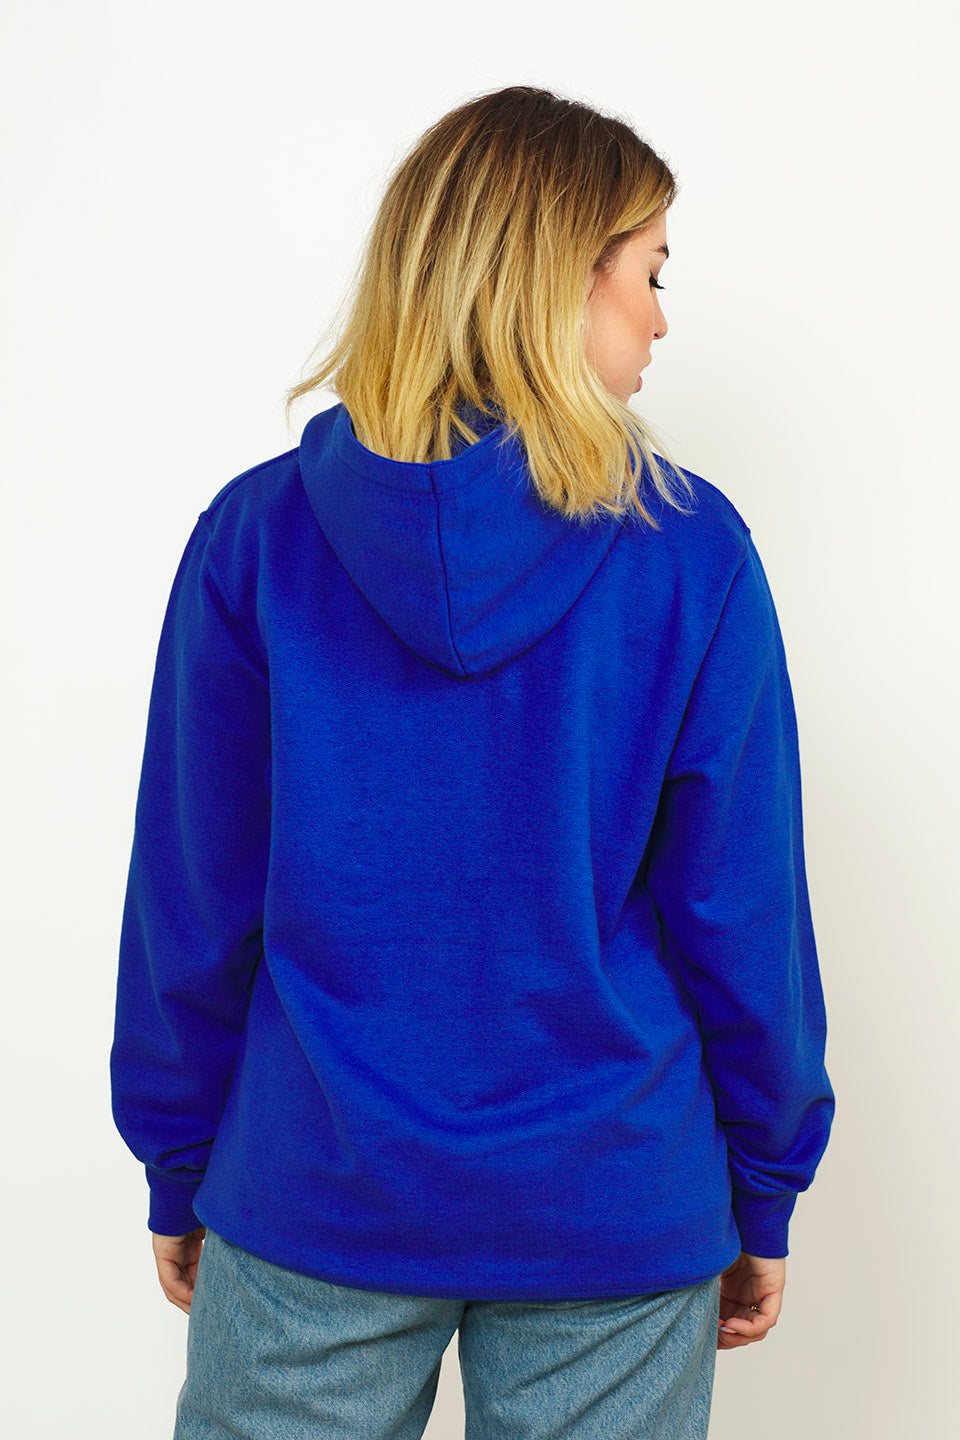 Radsow Apparel - Sweat Shirt à capuche London pour femmes Bleu Royal - Radsow Apparel 